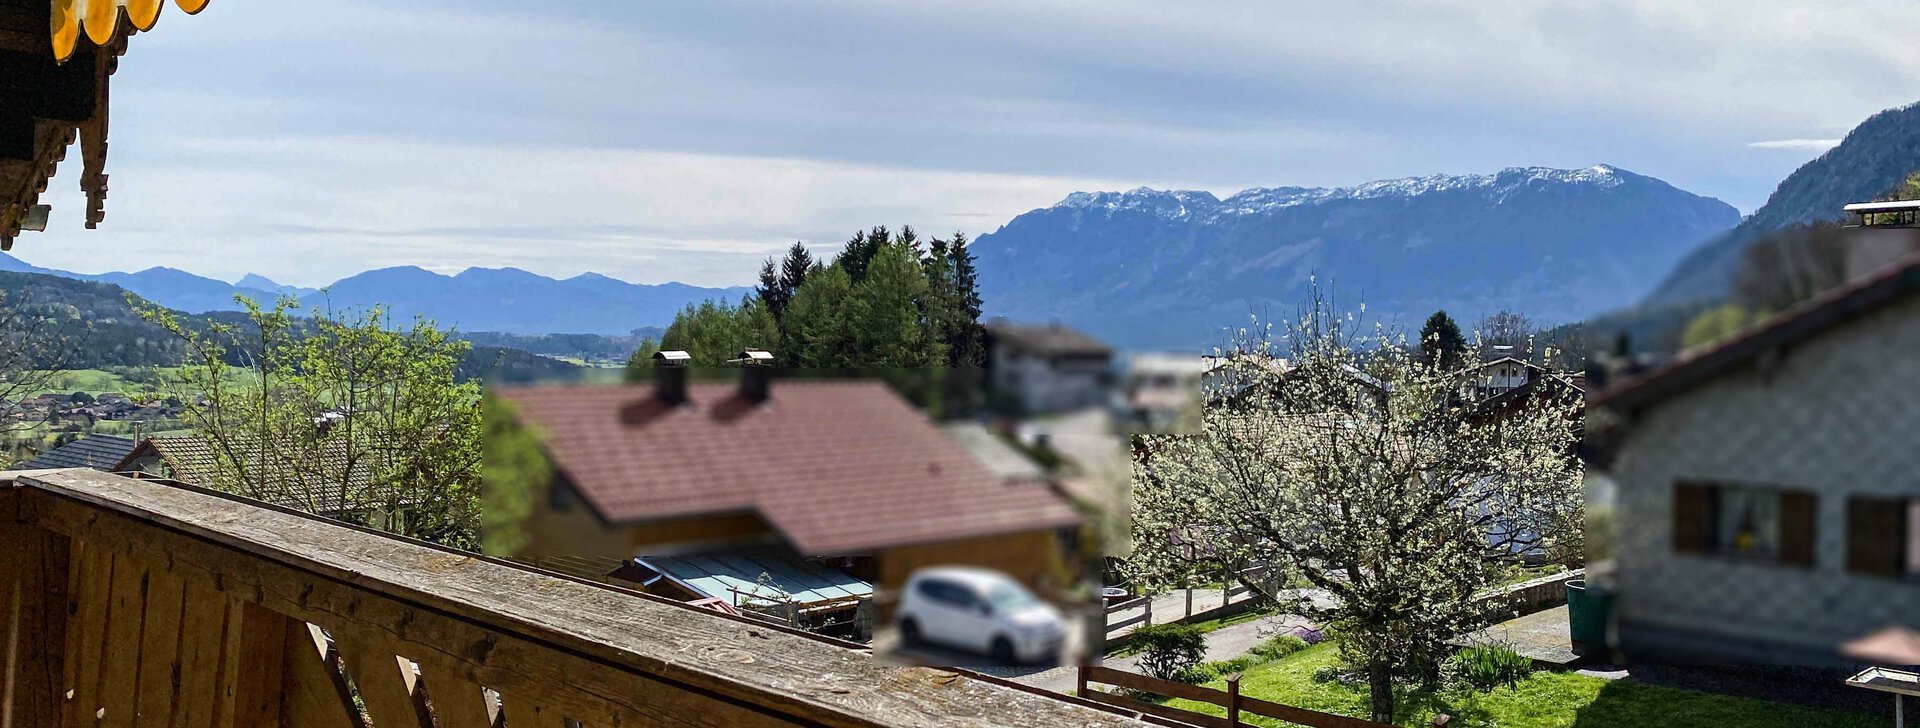 Ausblick vom Balkon, Einfamilienhaus, Immobilie kaufen, Aufham-Anger  | © HausBauHaus GmbH 